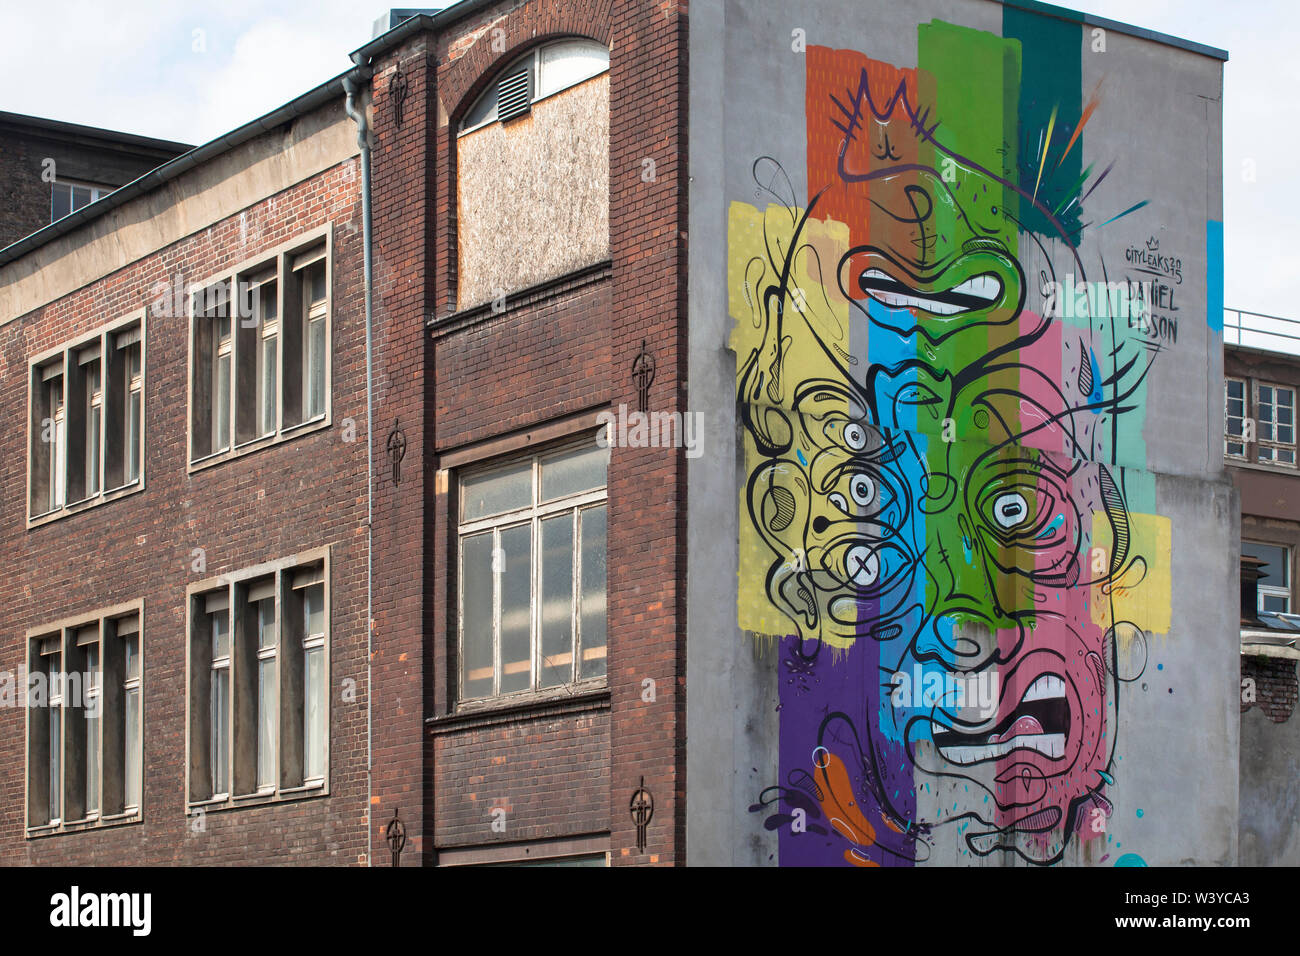 La peinture murale de l'artiste Daniel Lisson sur un édifice à l'Deutz-Muelheimer street dans le quartier de Deutz, Cologne, Allemagne. Des graffiti Kuenstl Banque D'Images